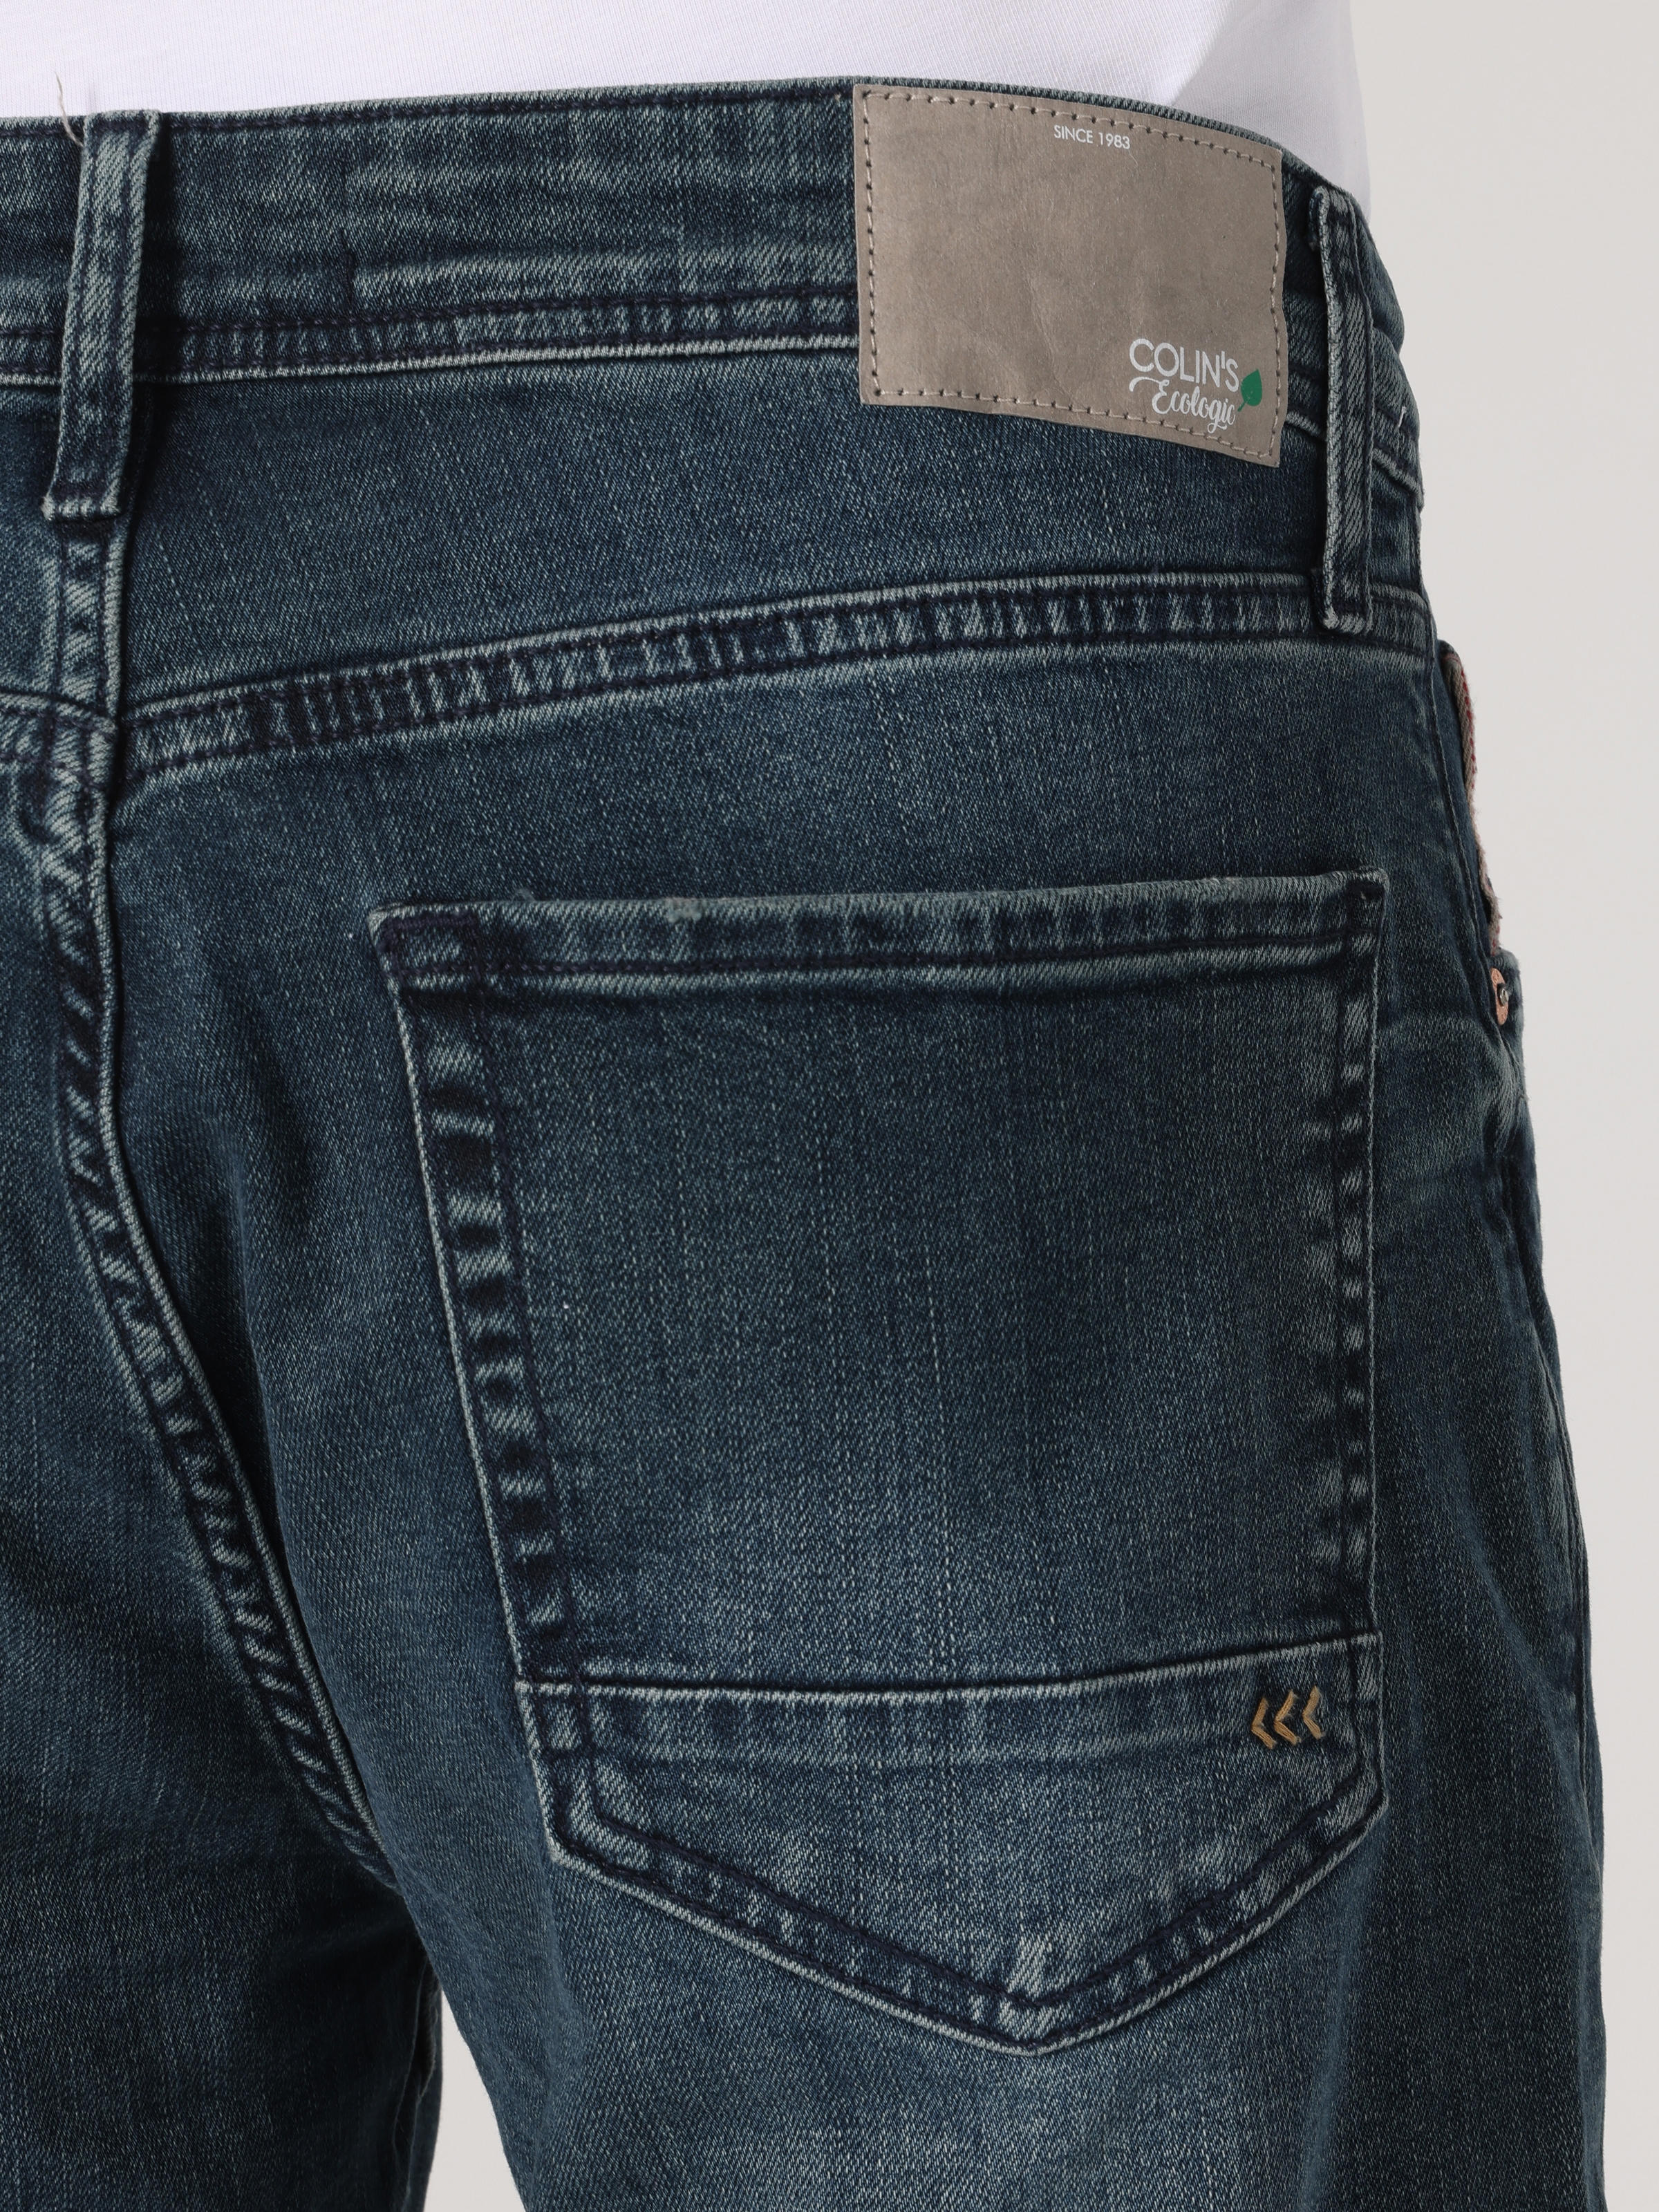 Afficher les détails de Pantalon Homme 067 Jack Coupe Régulière Taille Moyenne Jambe Droite Vert